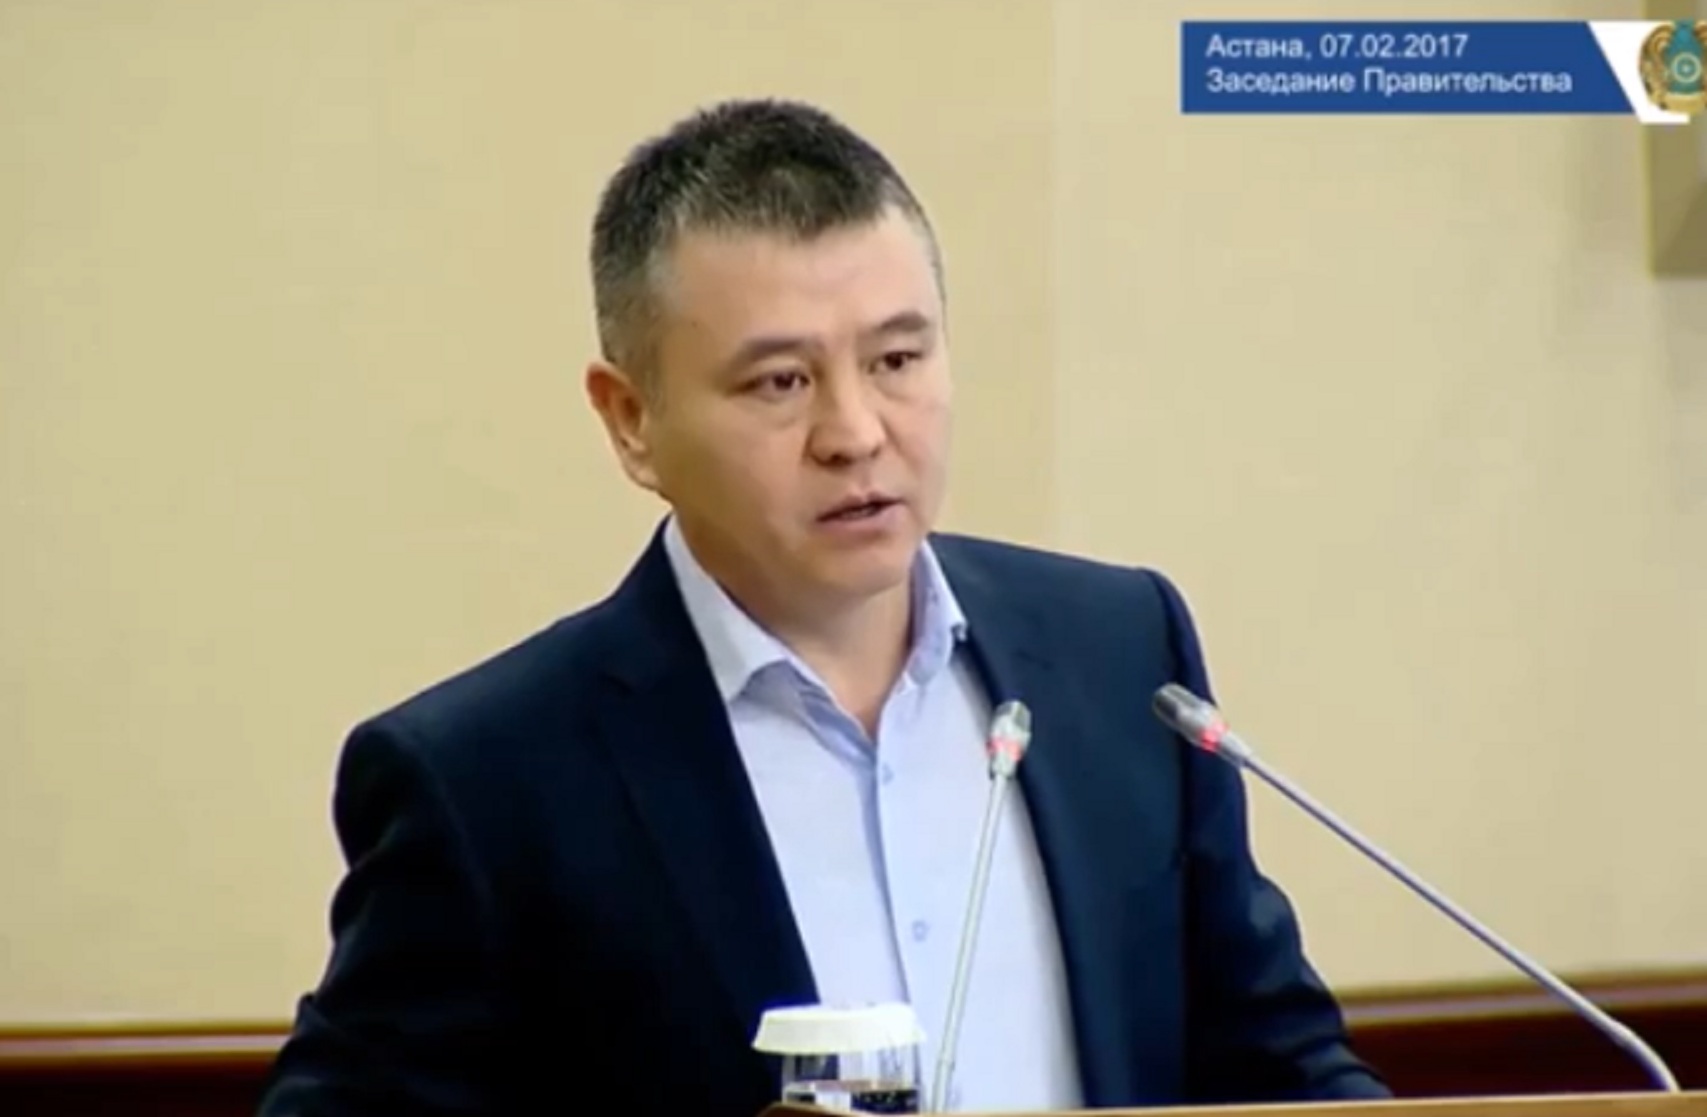 Тайжан үкіметте Ата заңның 26-бабын өзгертуге қатысты пікір білдірді (видео)